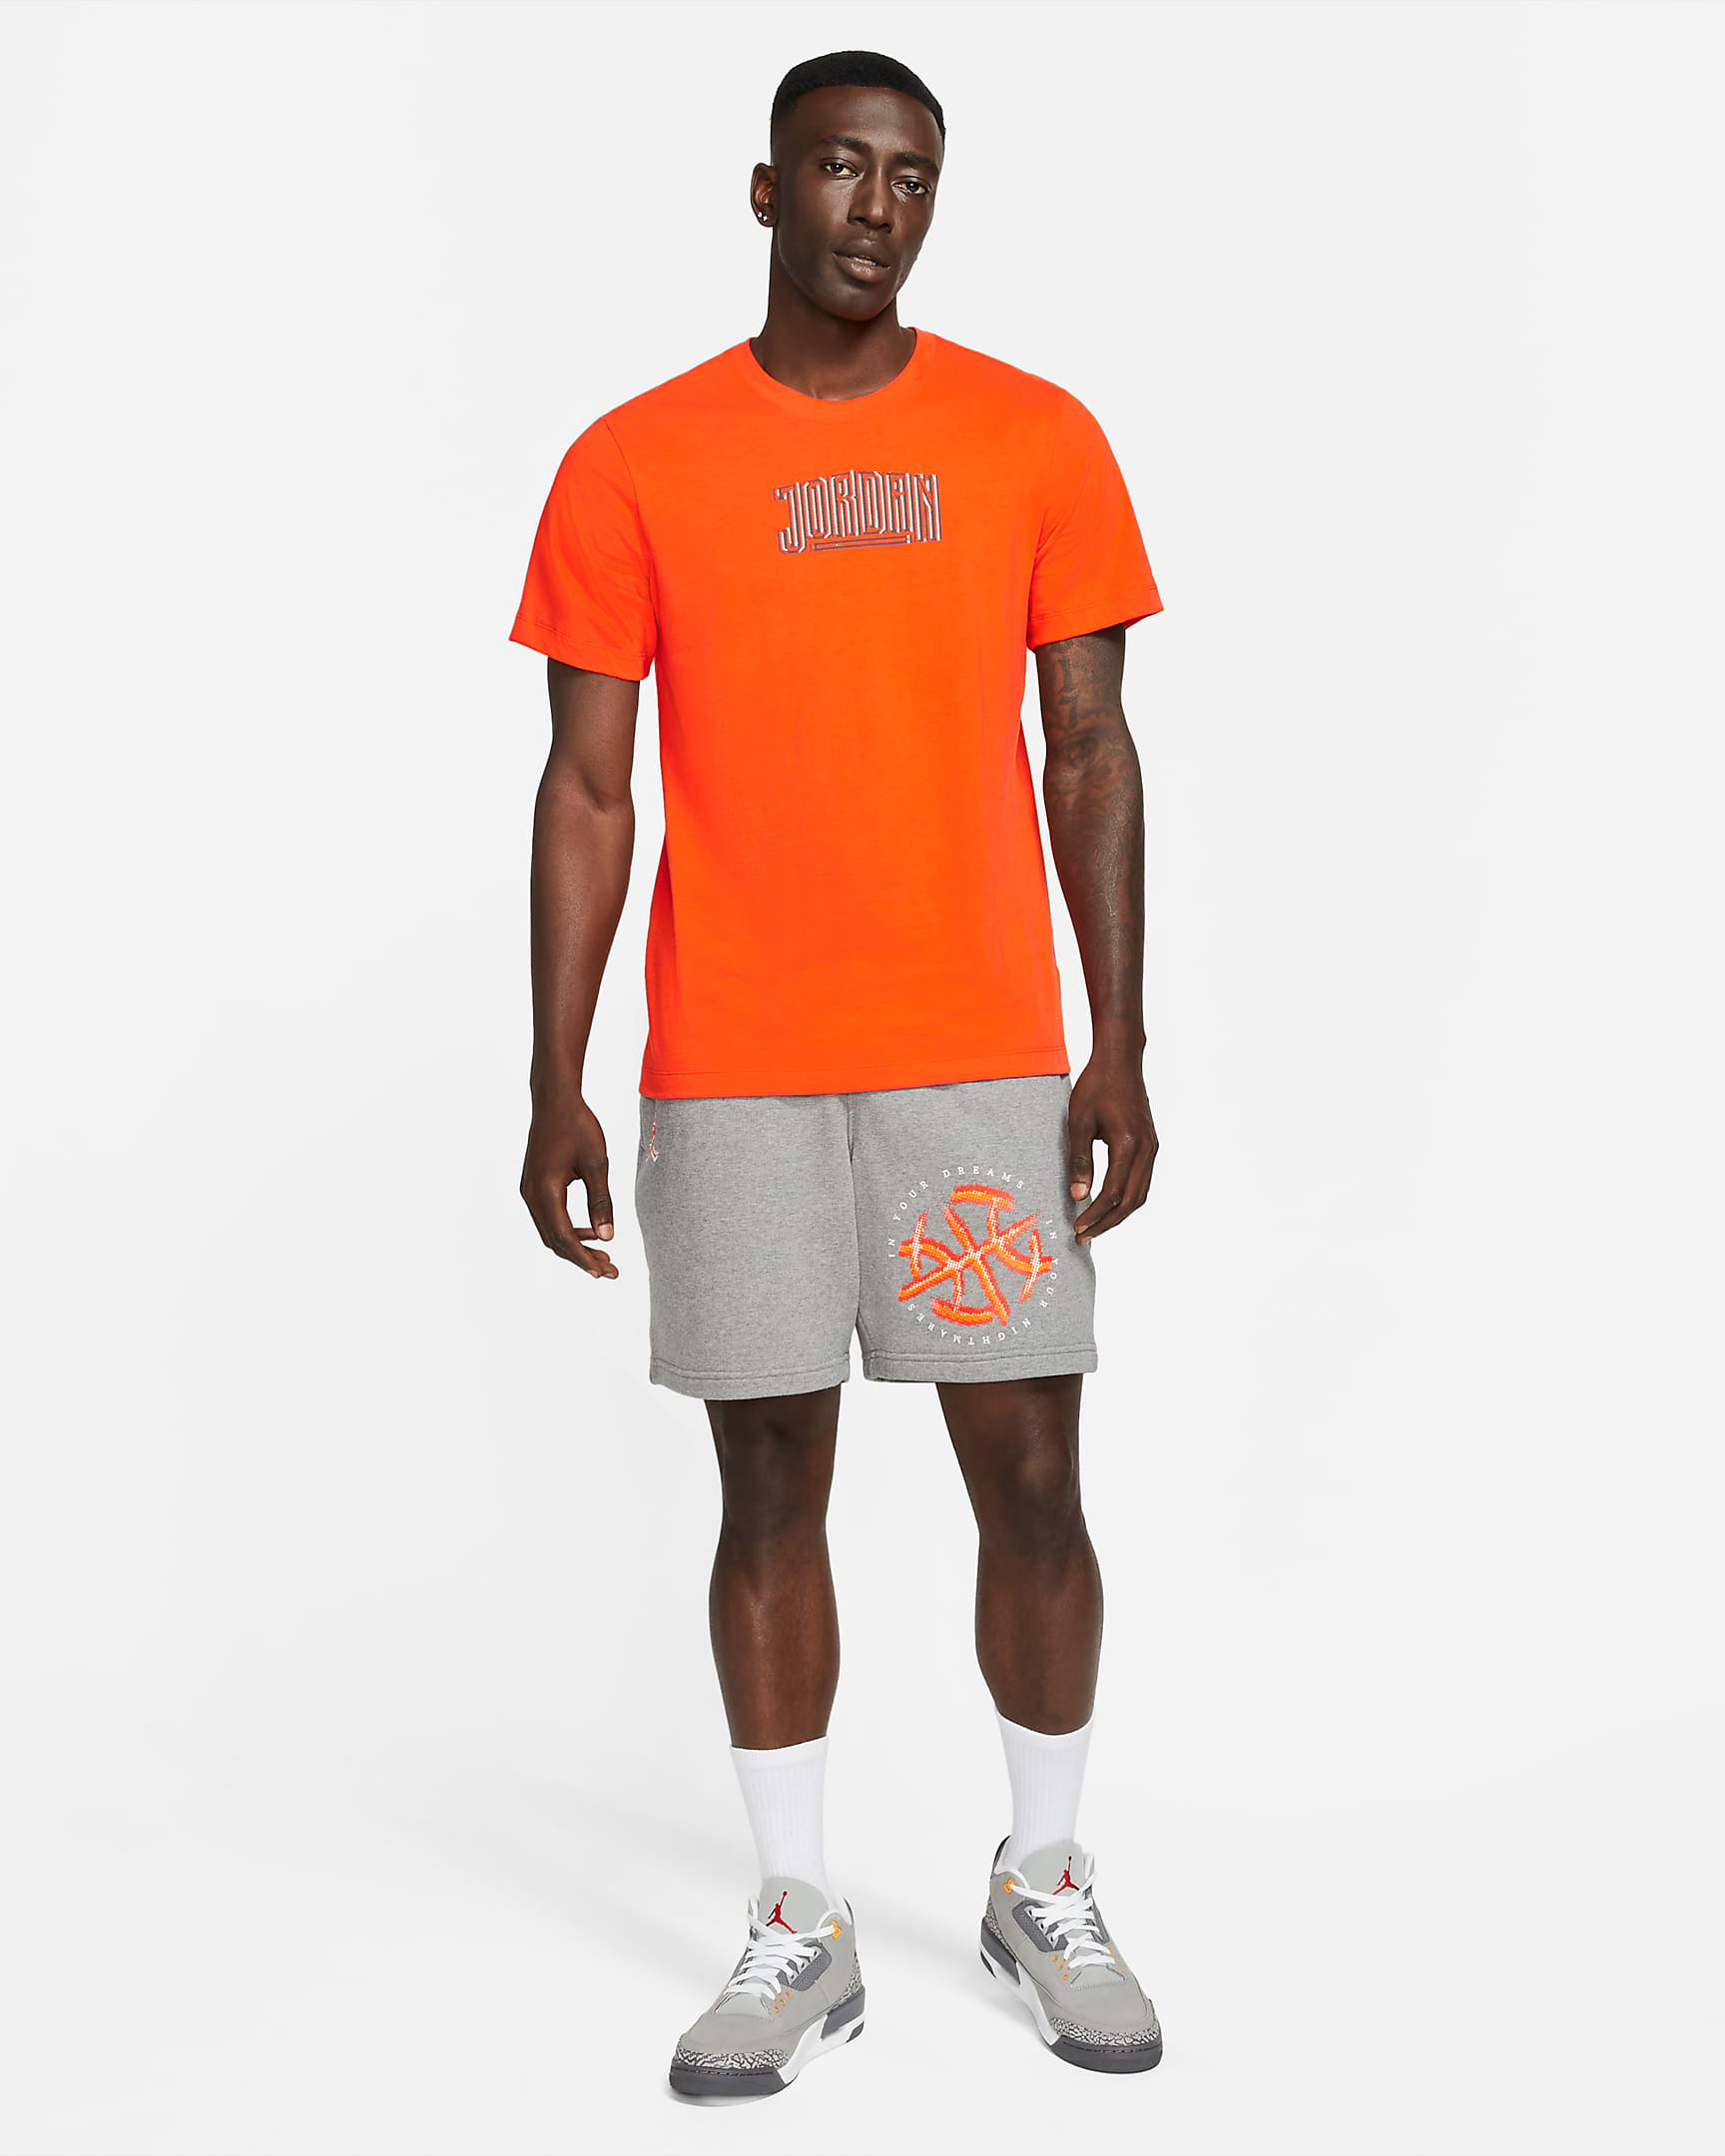 Jordan Orange Shirts Clothing Outfits to Match Air Jordans